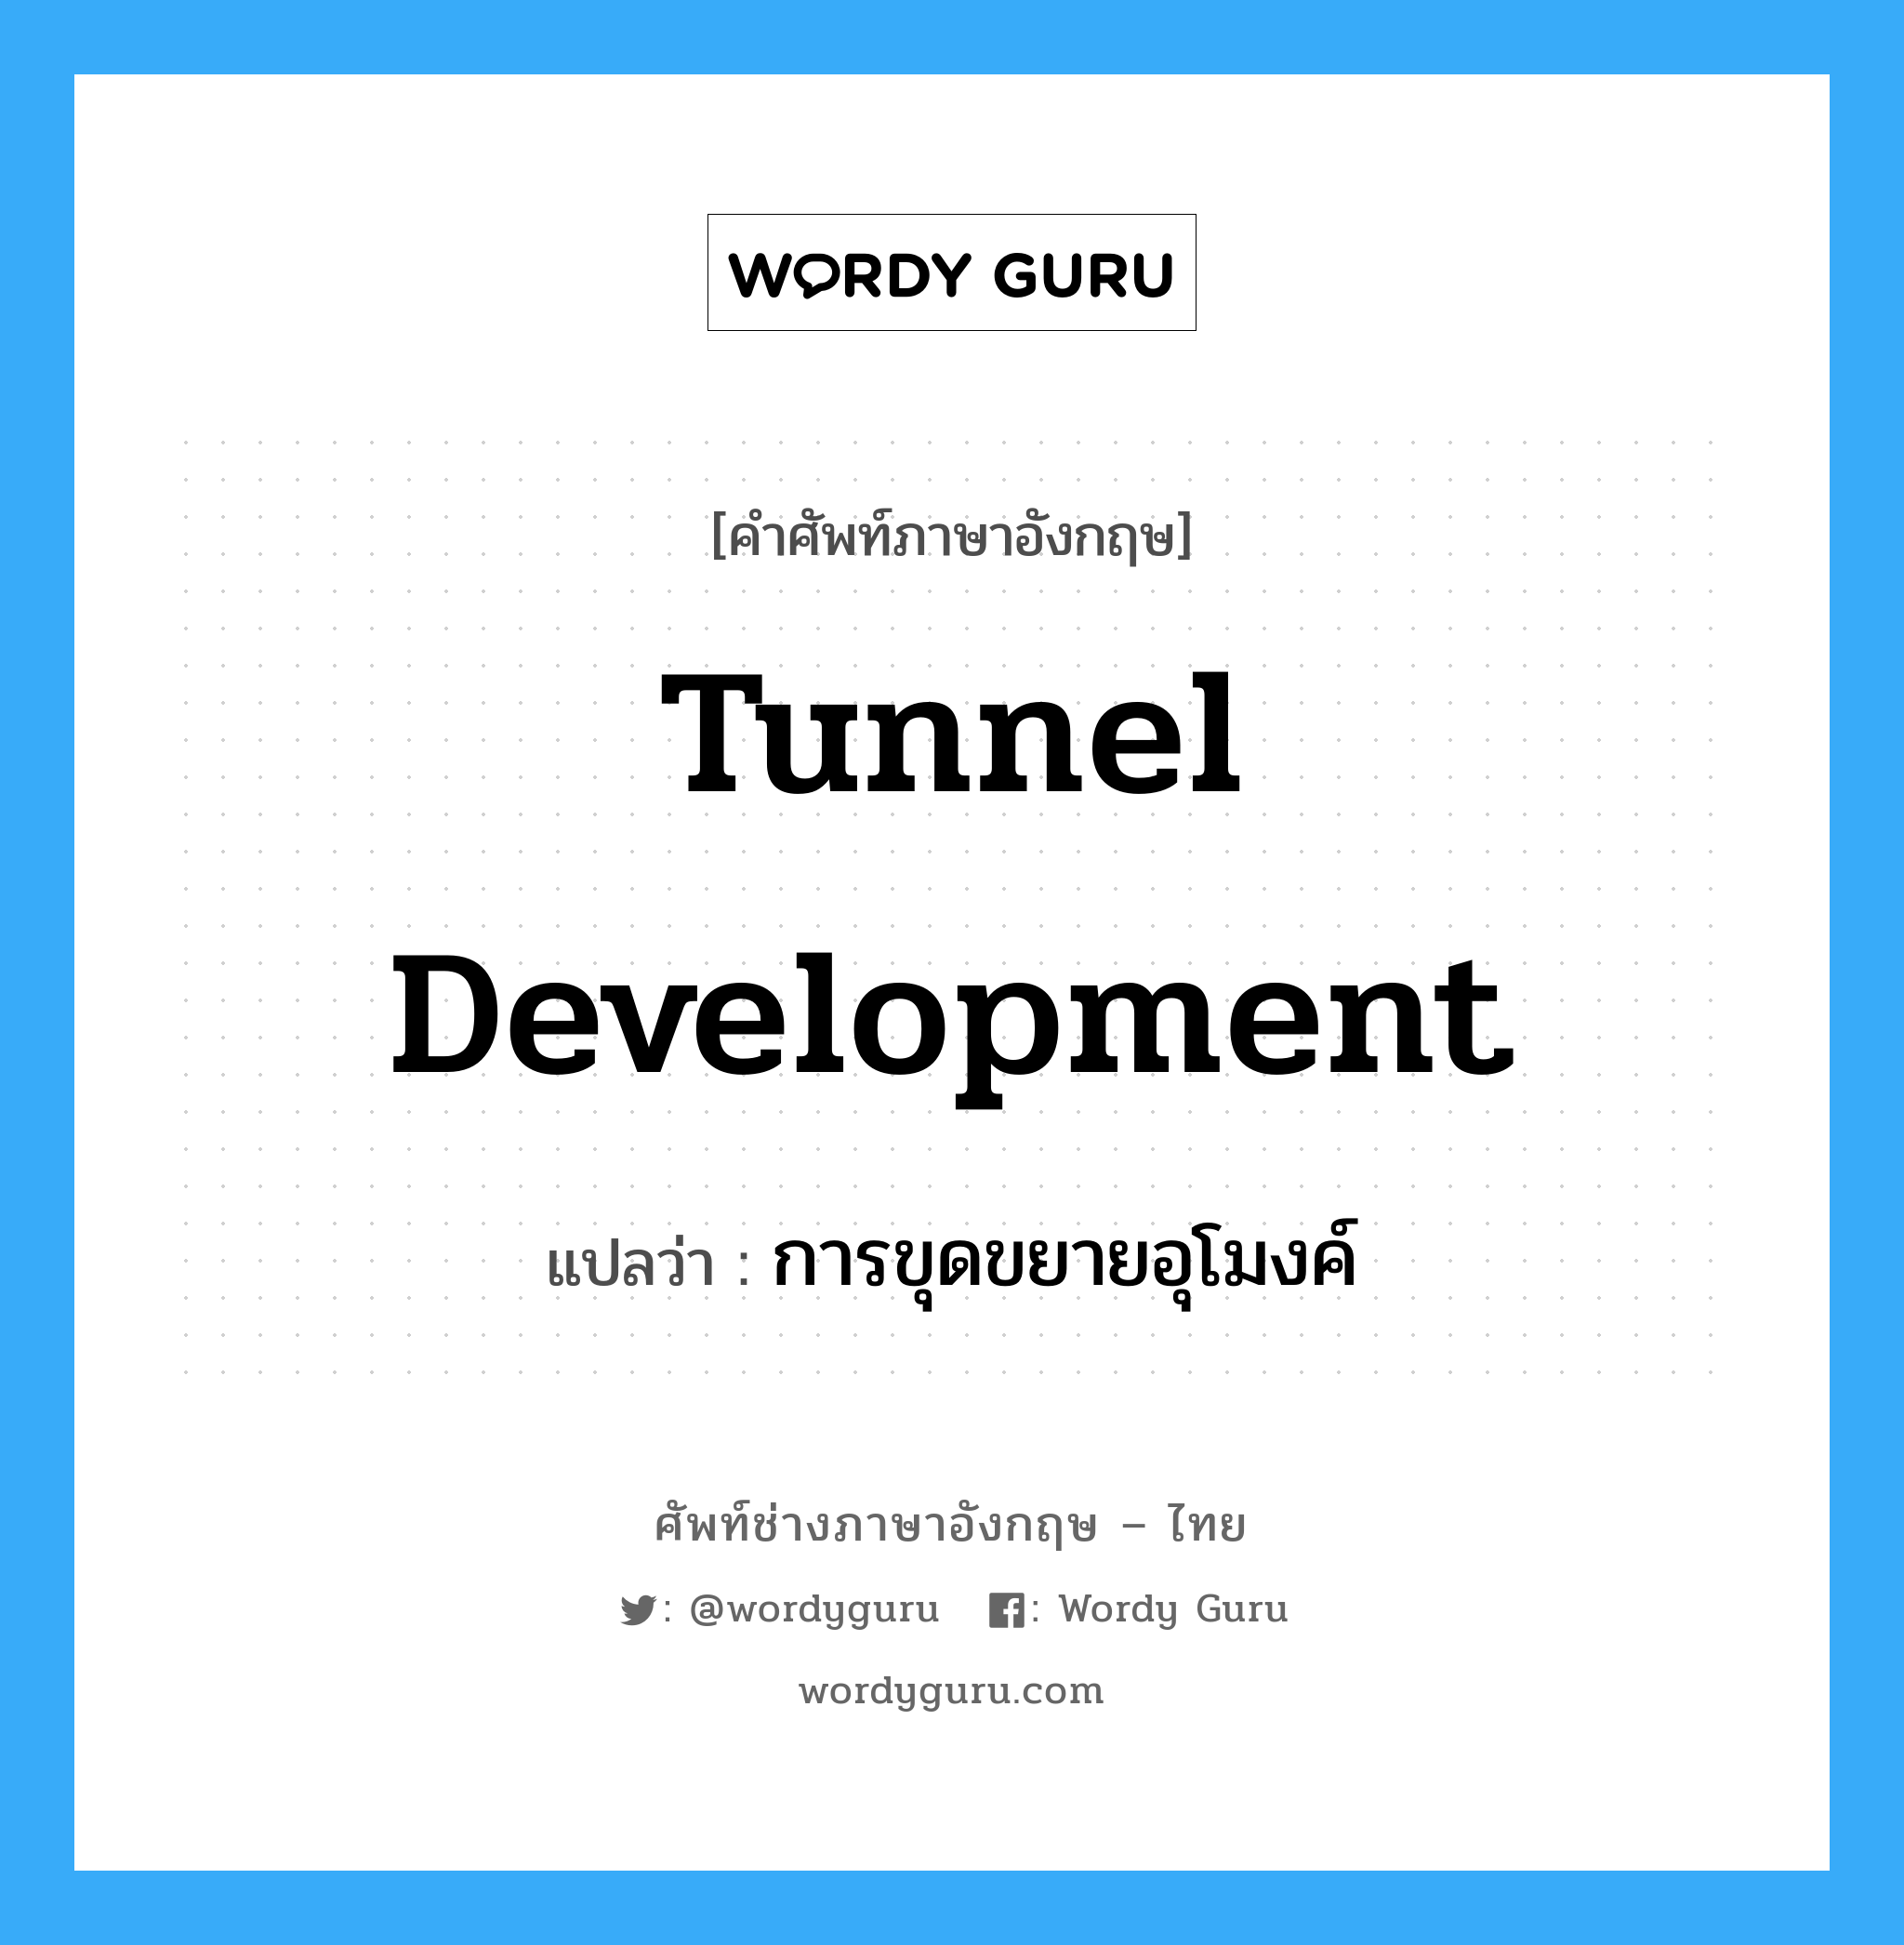 การขุดขยายอุโมงค์ ภาษาอังกฤษ?, คำศัพท์ช่างภาษาอังกฤษ - ไทย การขุดขยายอุโมงค์ คำศัพท์ภาษาอังกฤษ การขุดขยายอุโมงค์ แปลว่า tunnel development